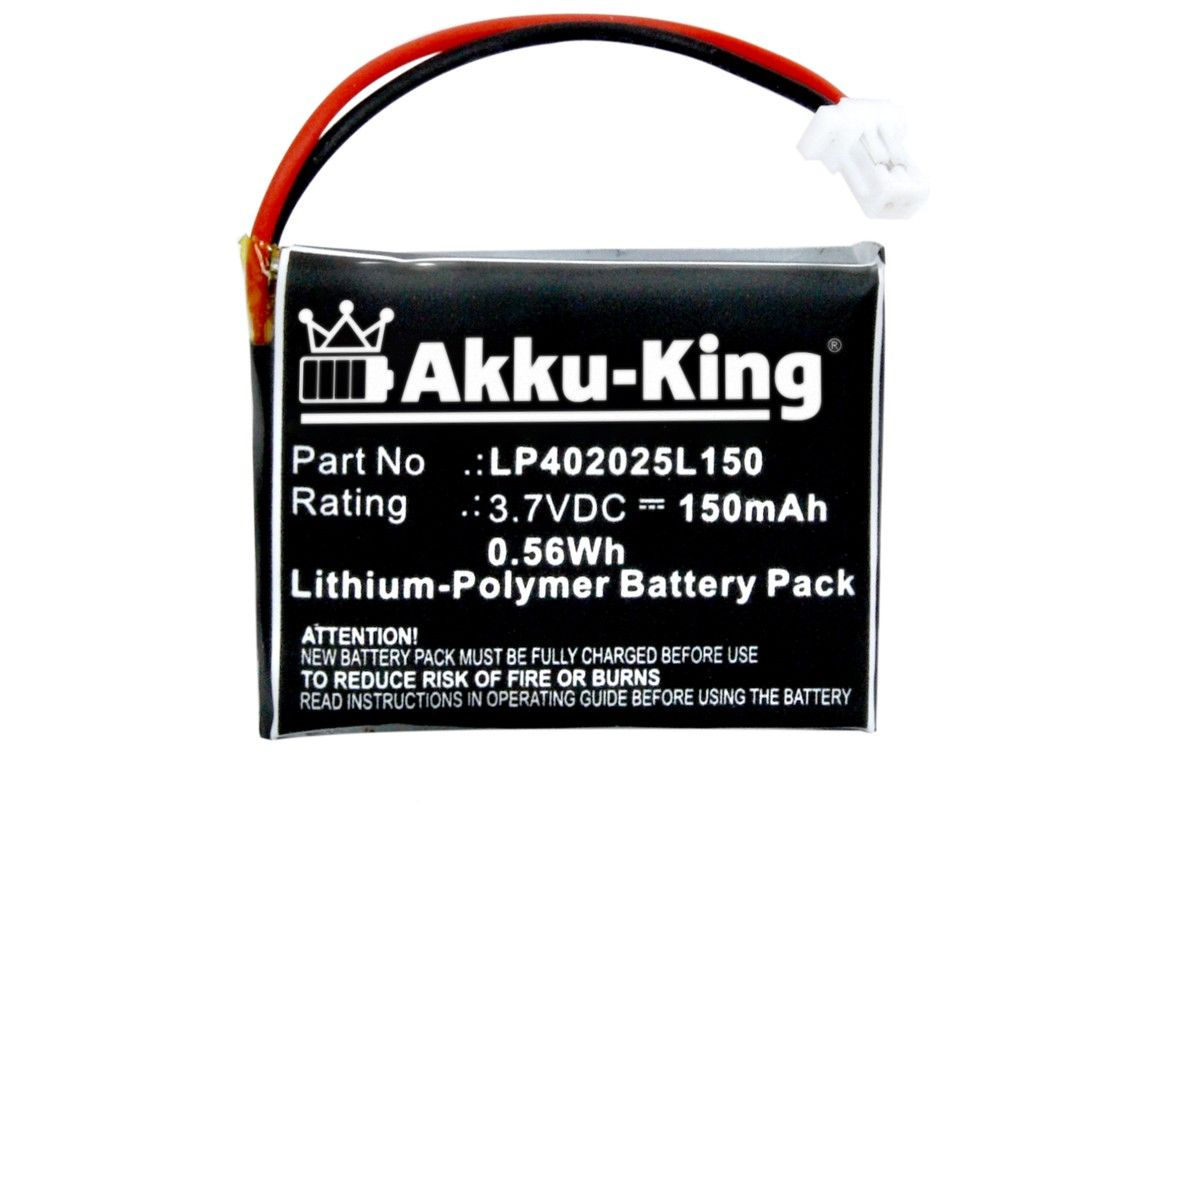 mit 150mAh Volt, Akku Nokia 3.7 kompatibel LP402025L150 Geräte-Akku, AKKU-KING Li-Polymer